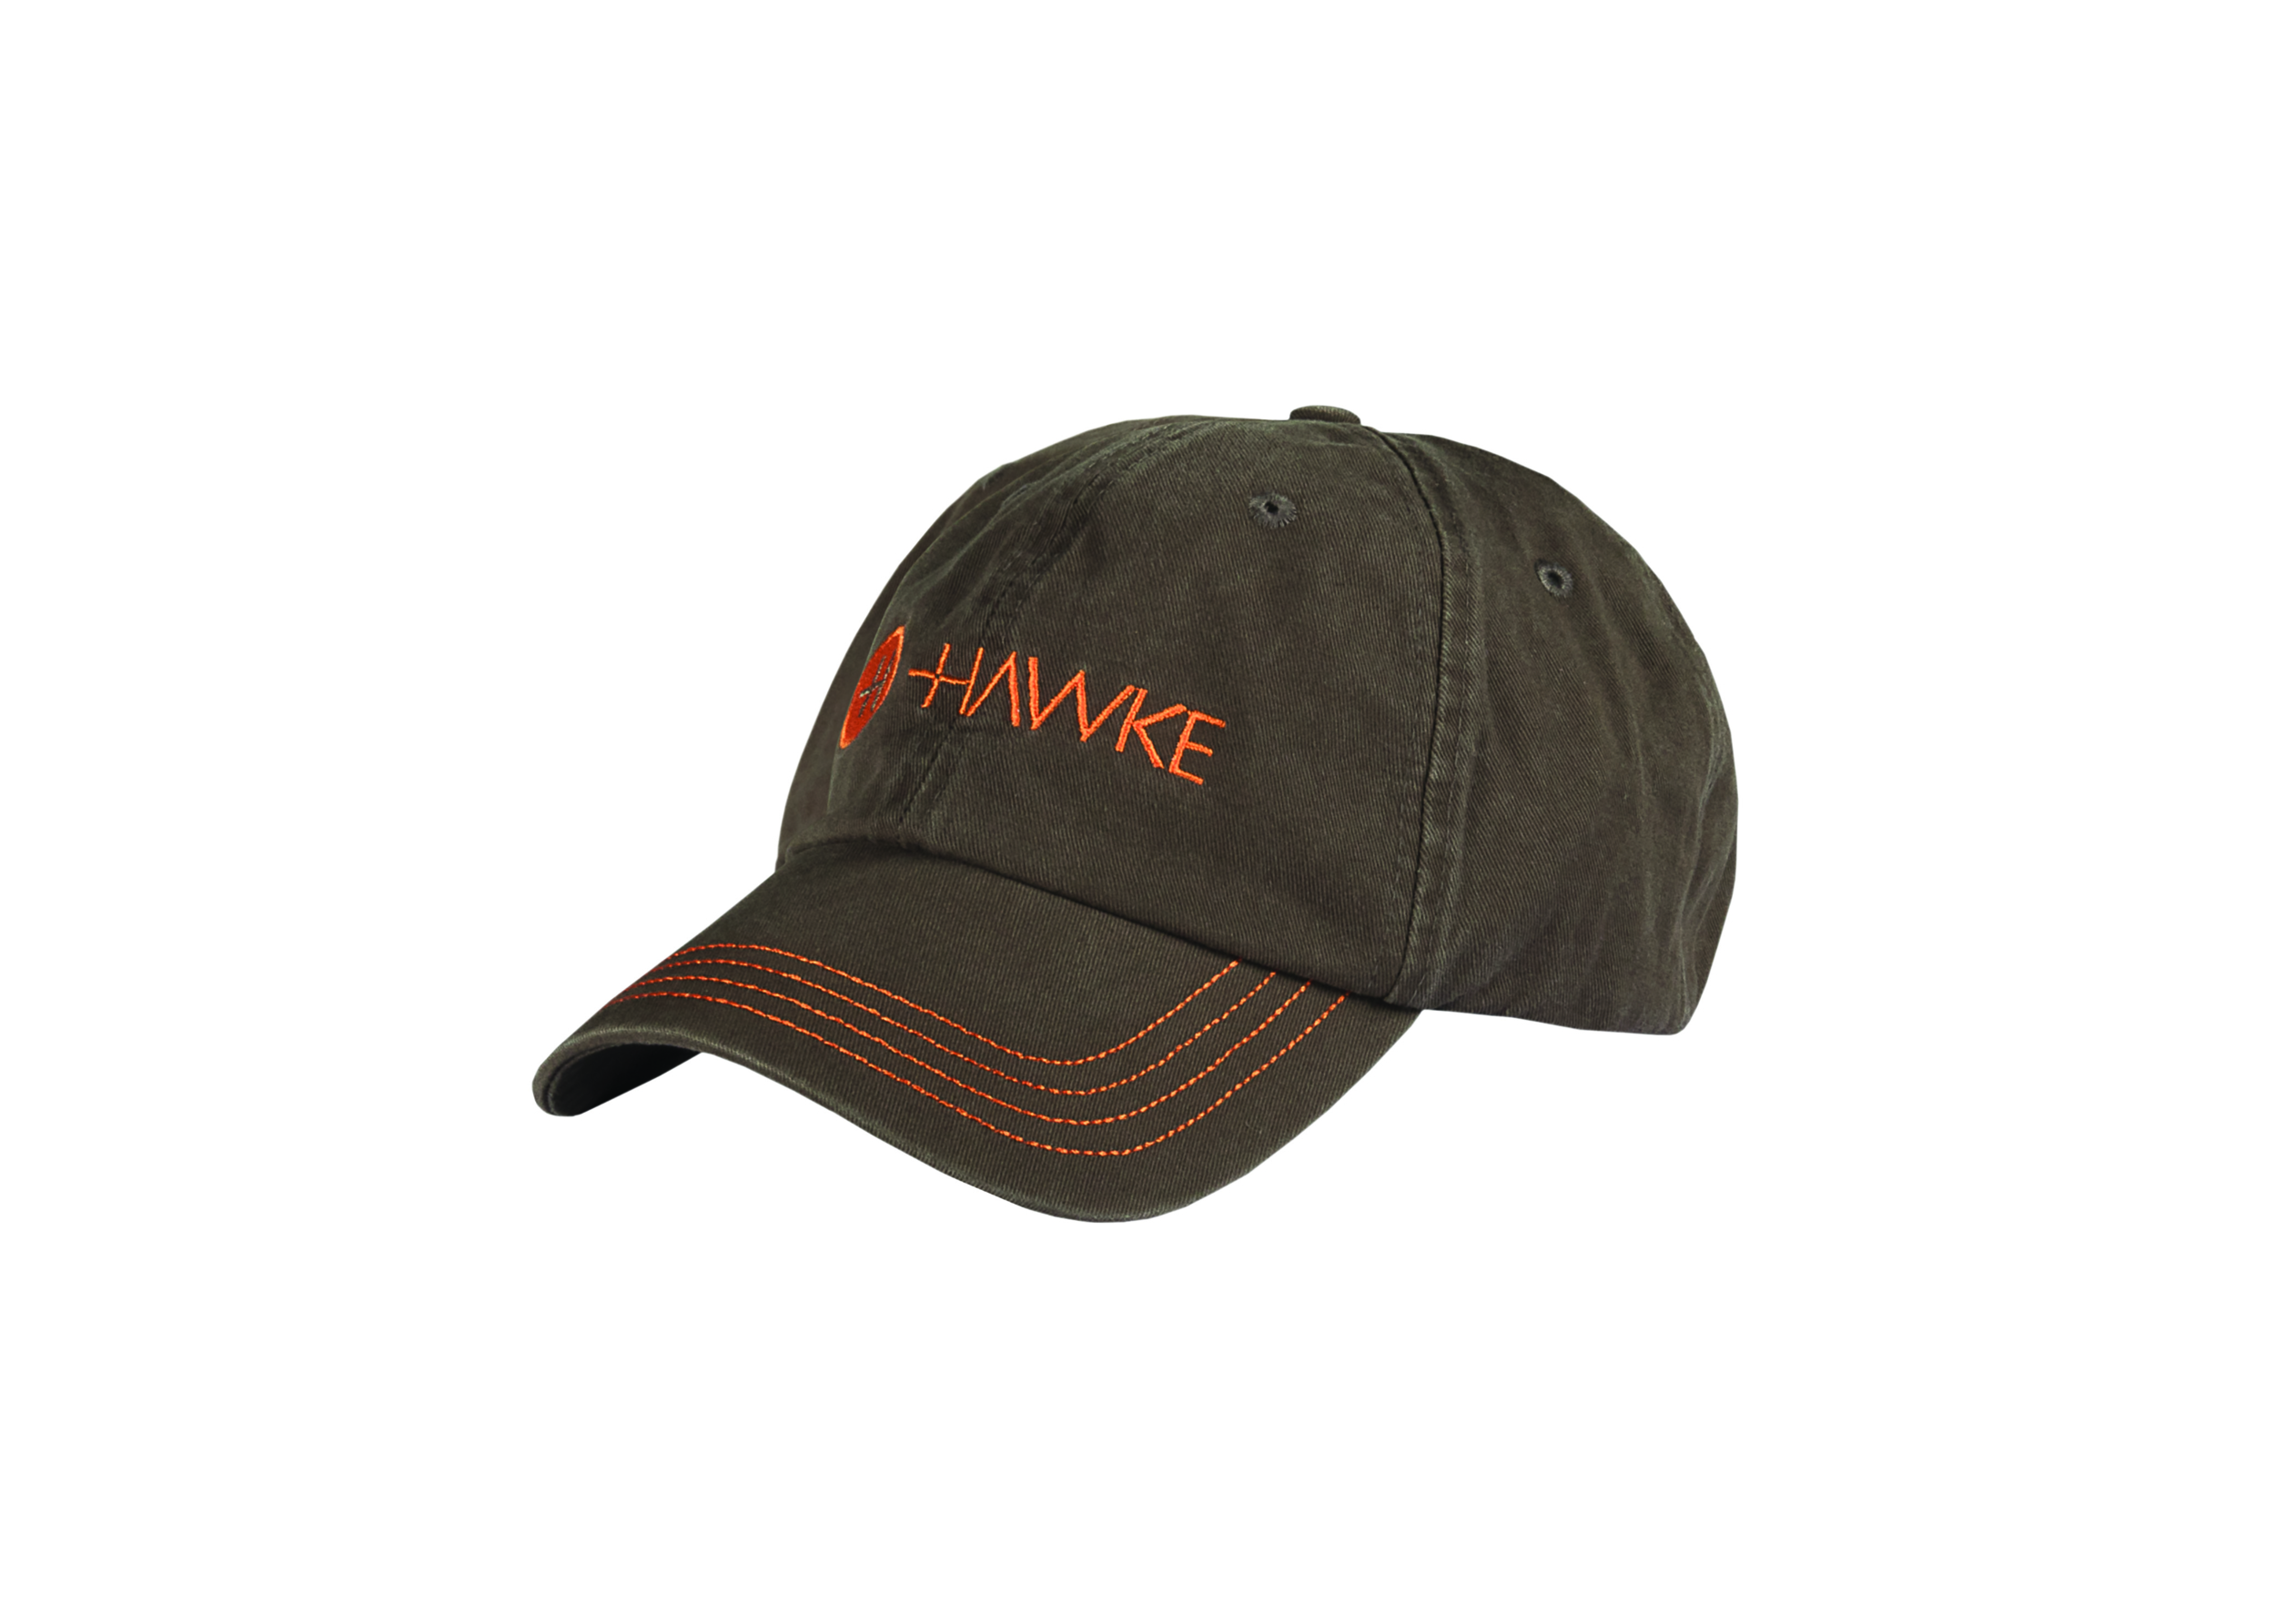 99301 – Grey & Orange distressed cap